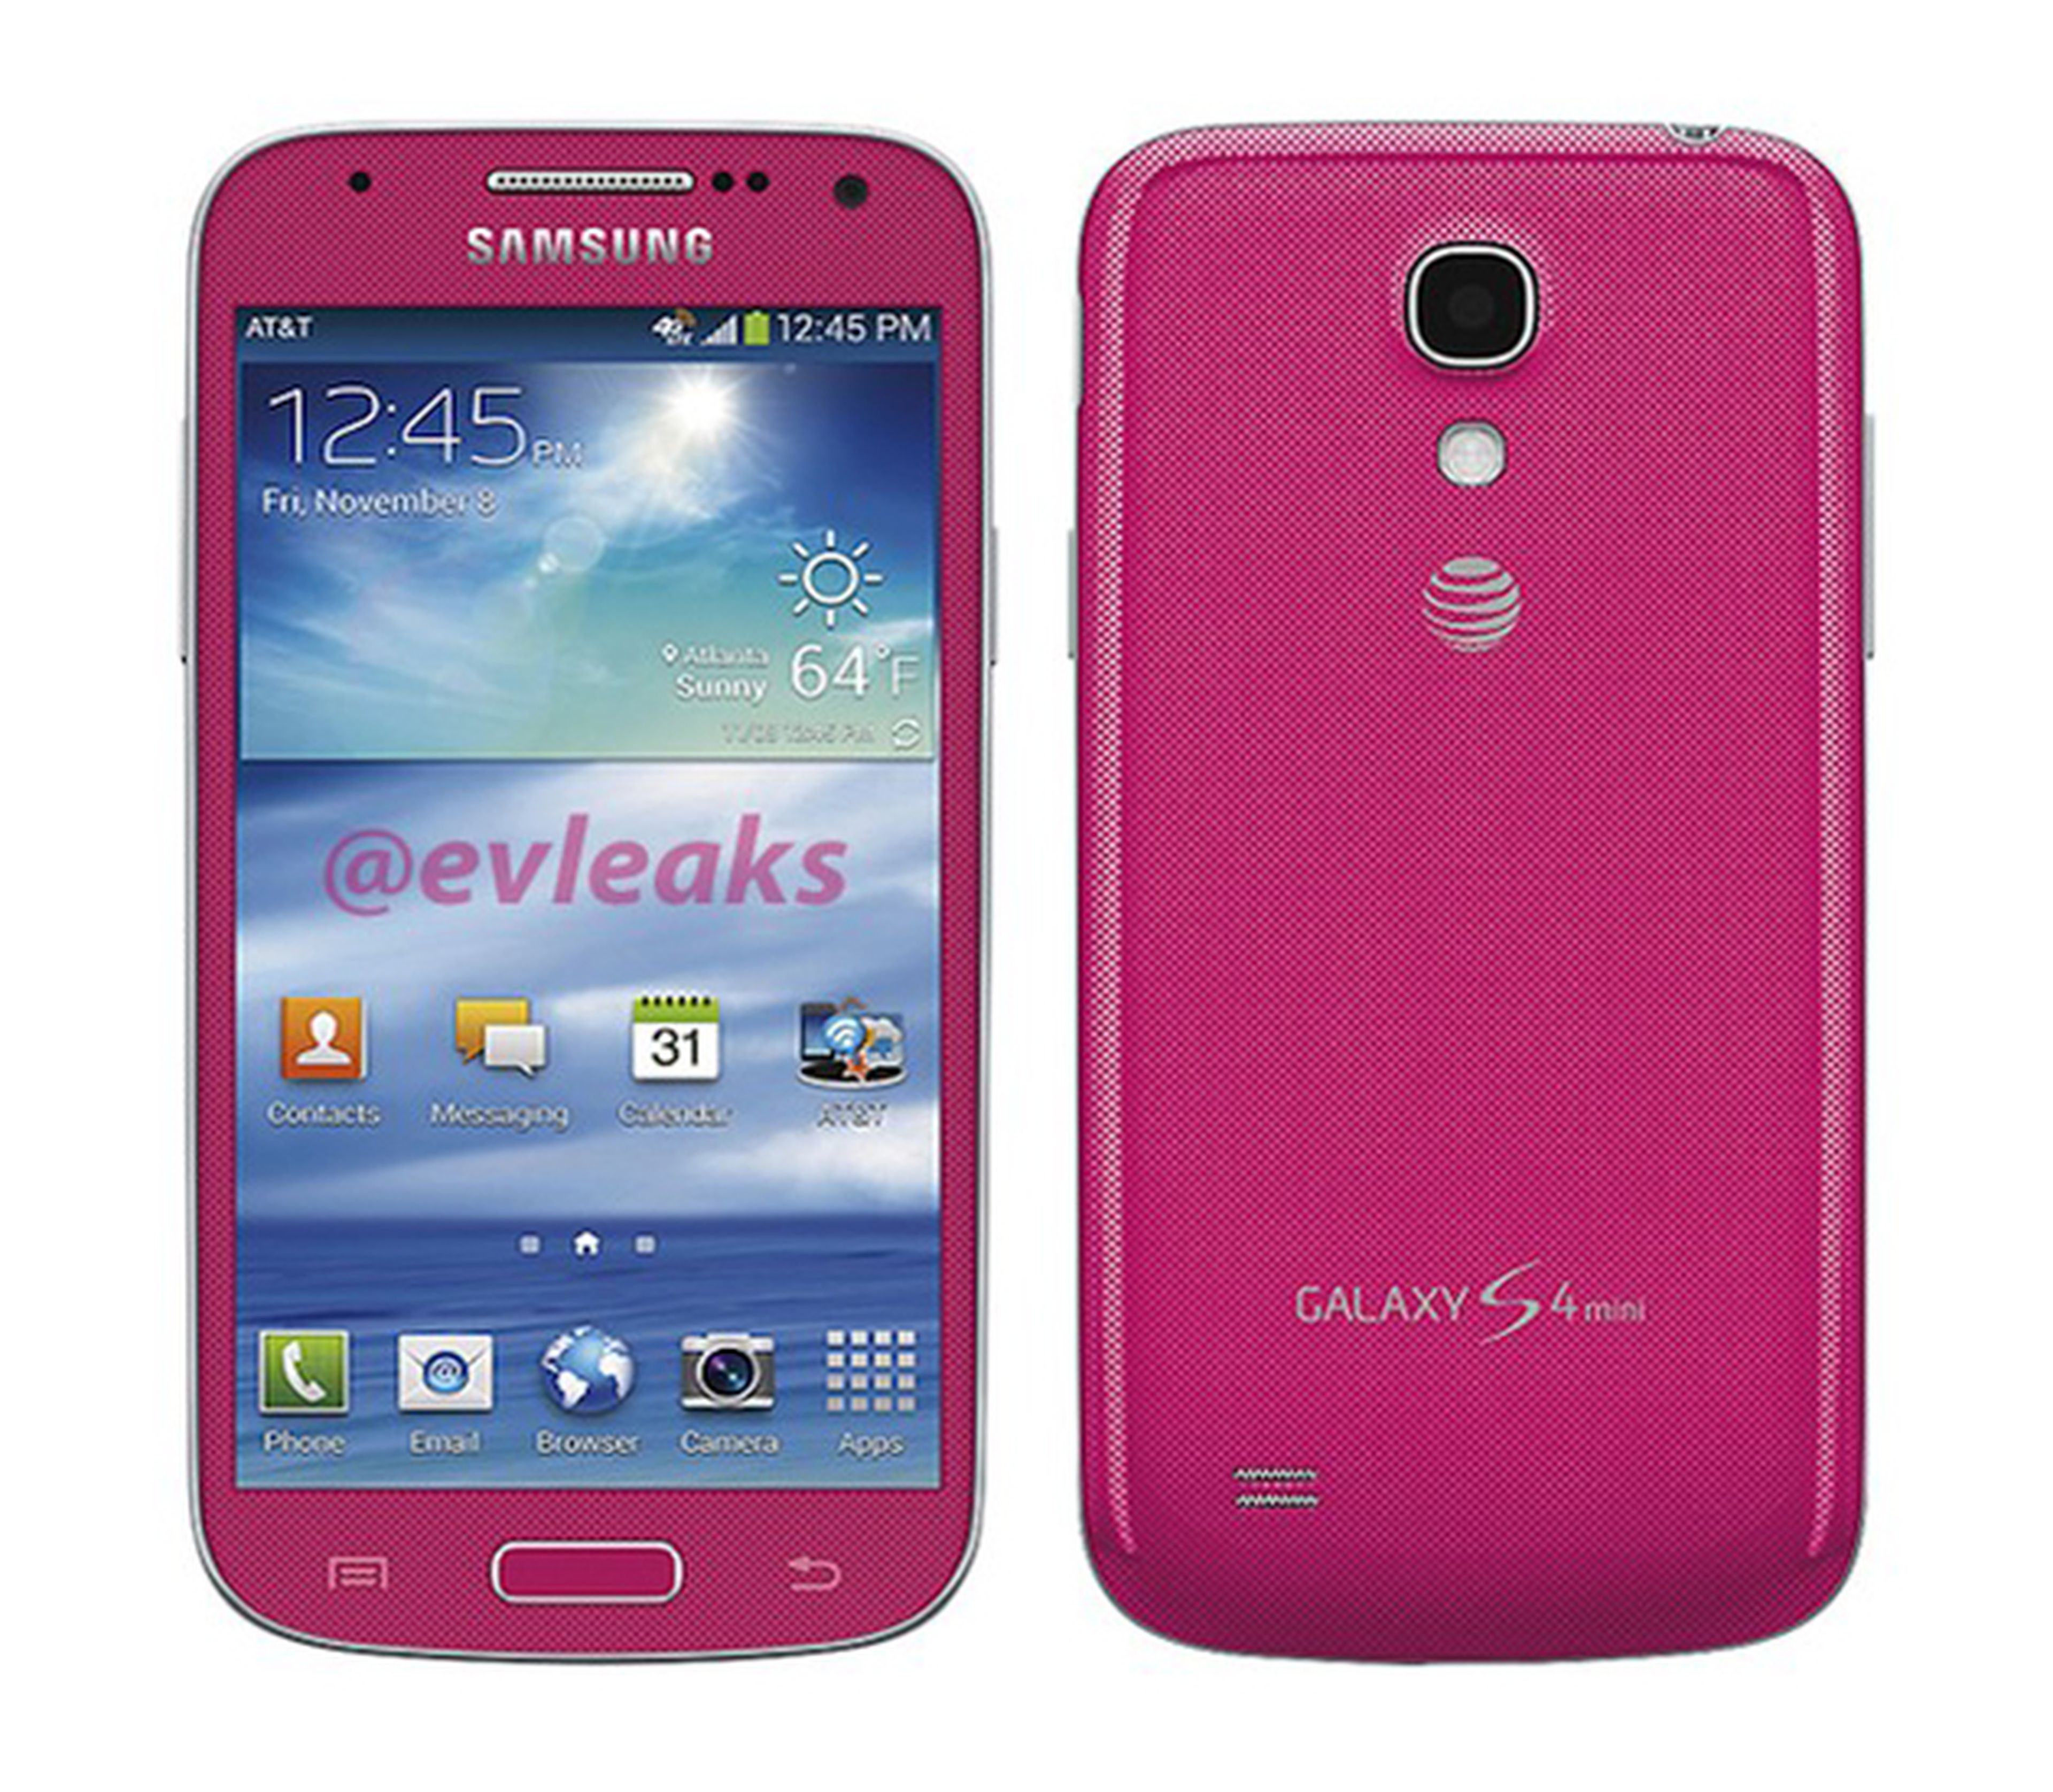 Samsung Galaxy S4 mini filtrado en color rosa